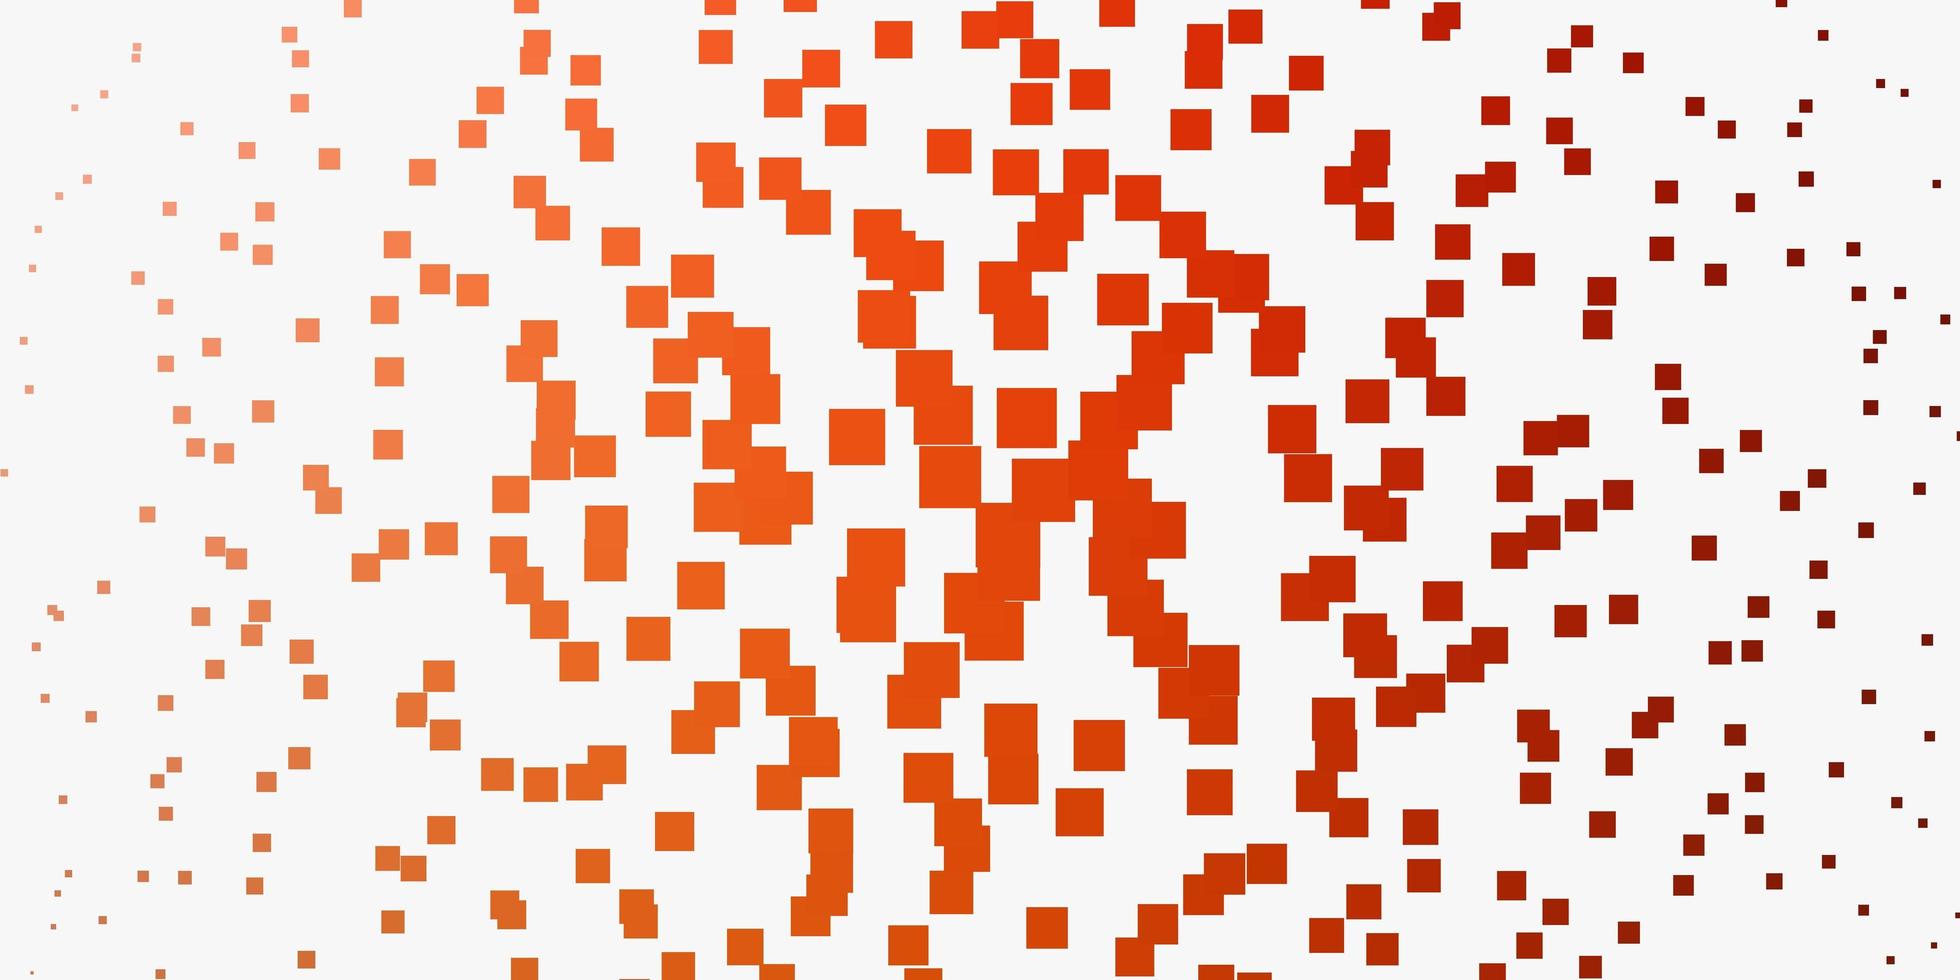 padrão de vetor laranja claro em estilo quadrado.